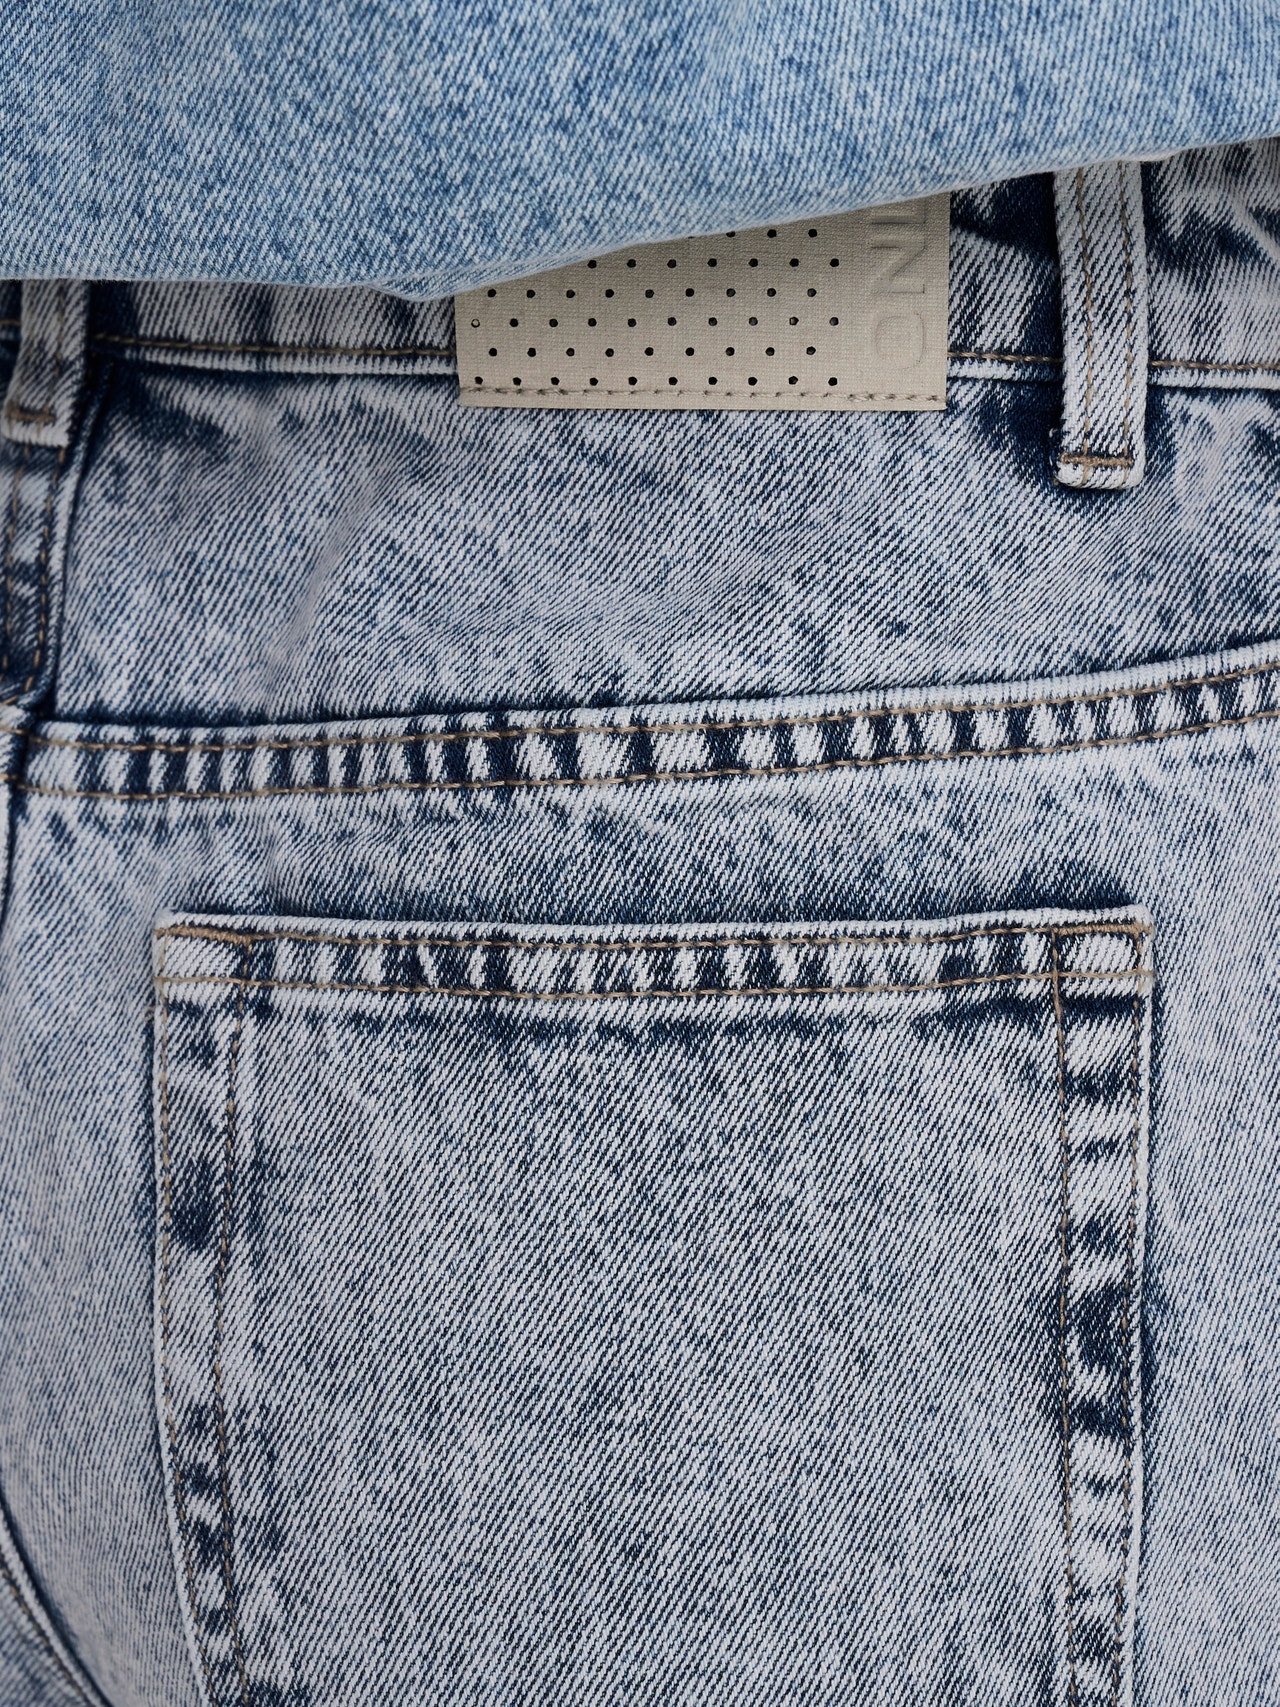 ONLY Normal geschnitten Hohe Taille Shorts -Light Blue Denim - 15245657